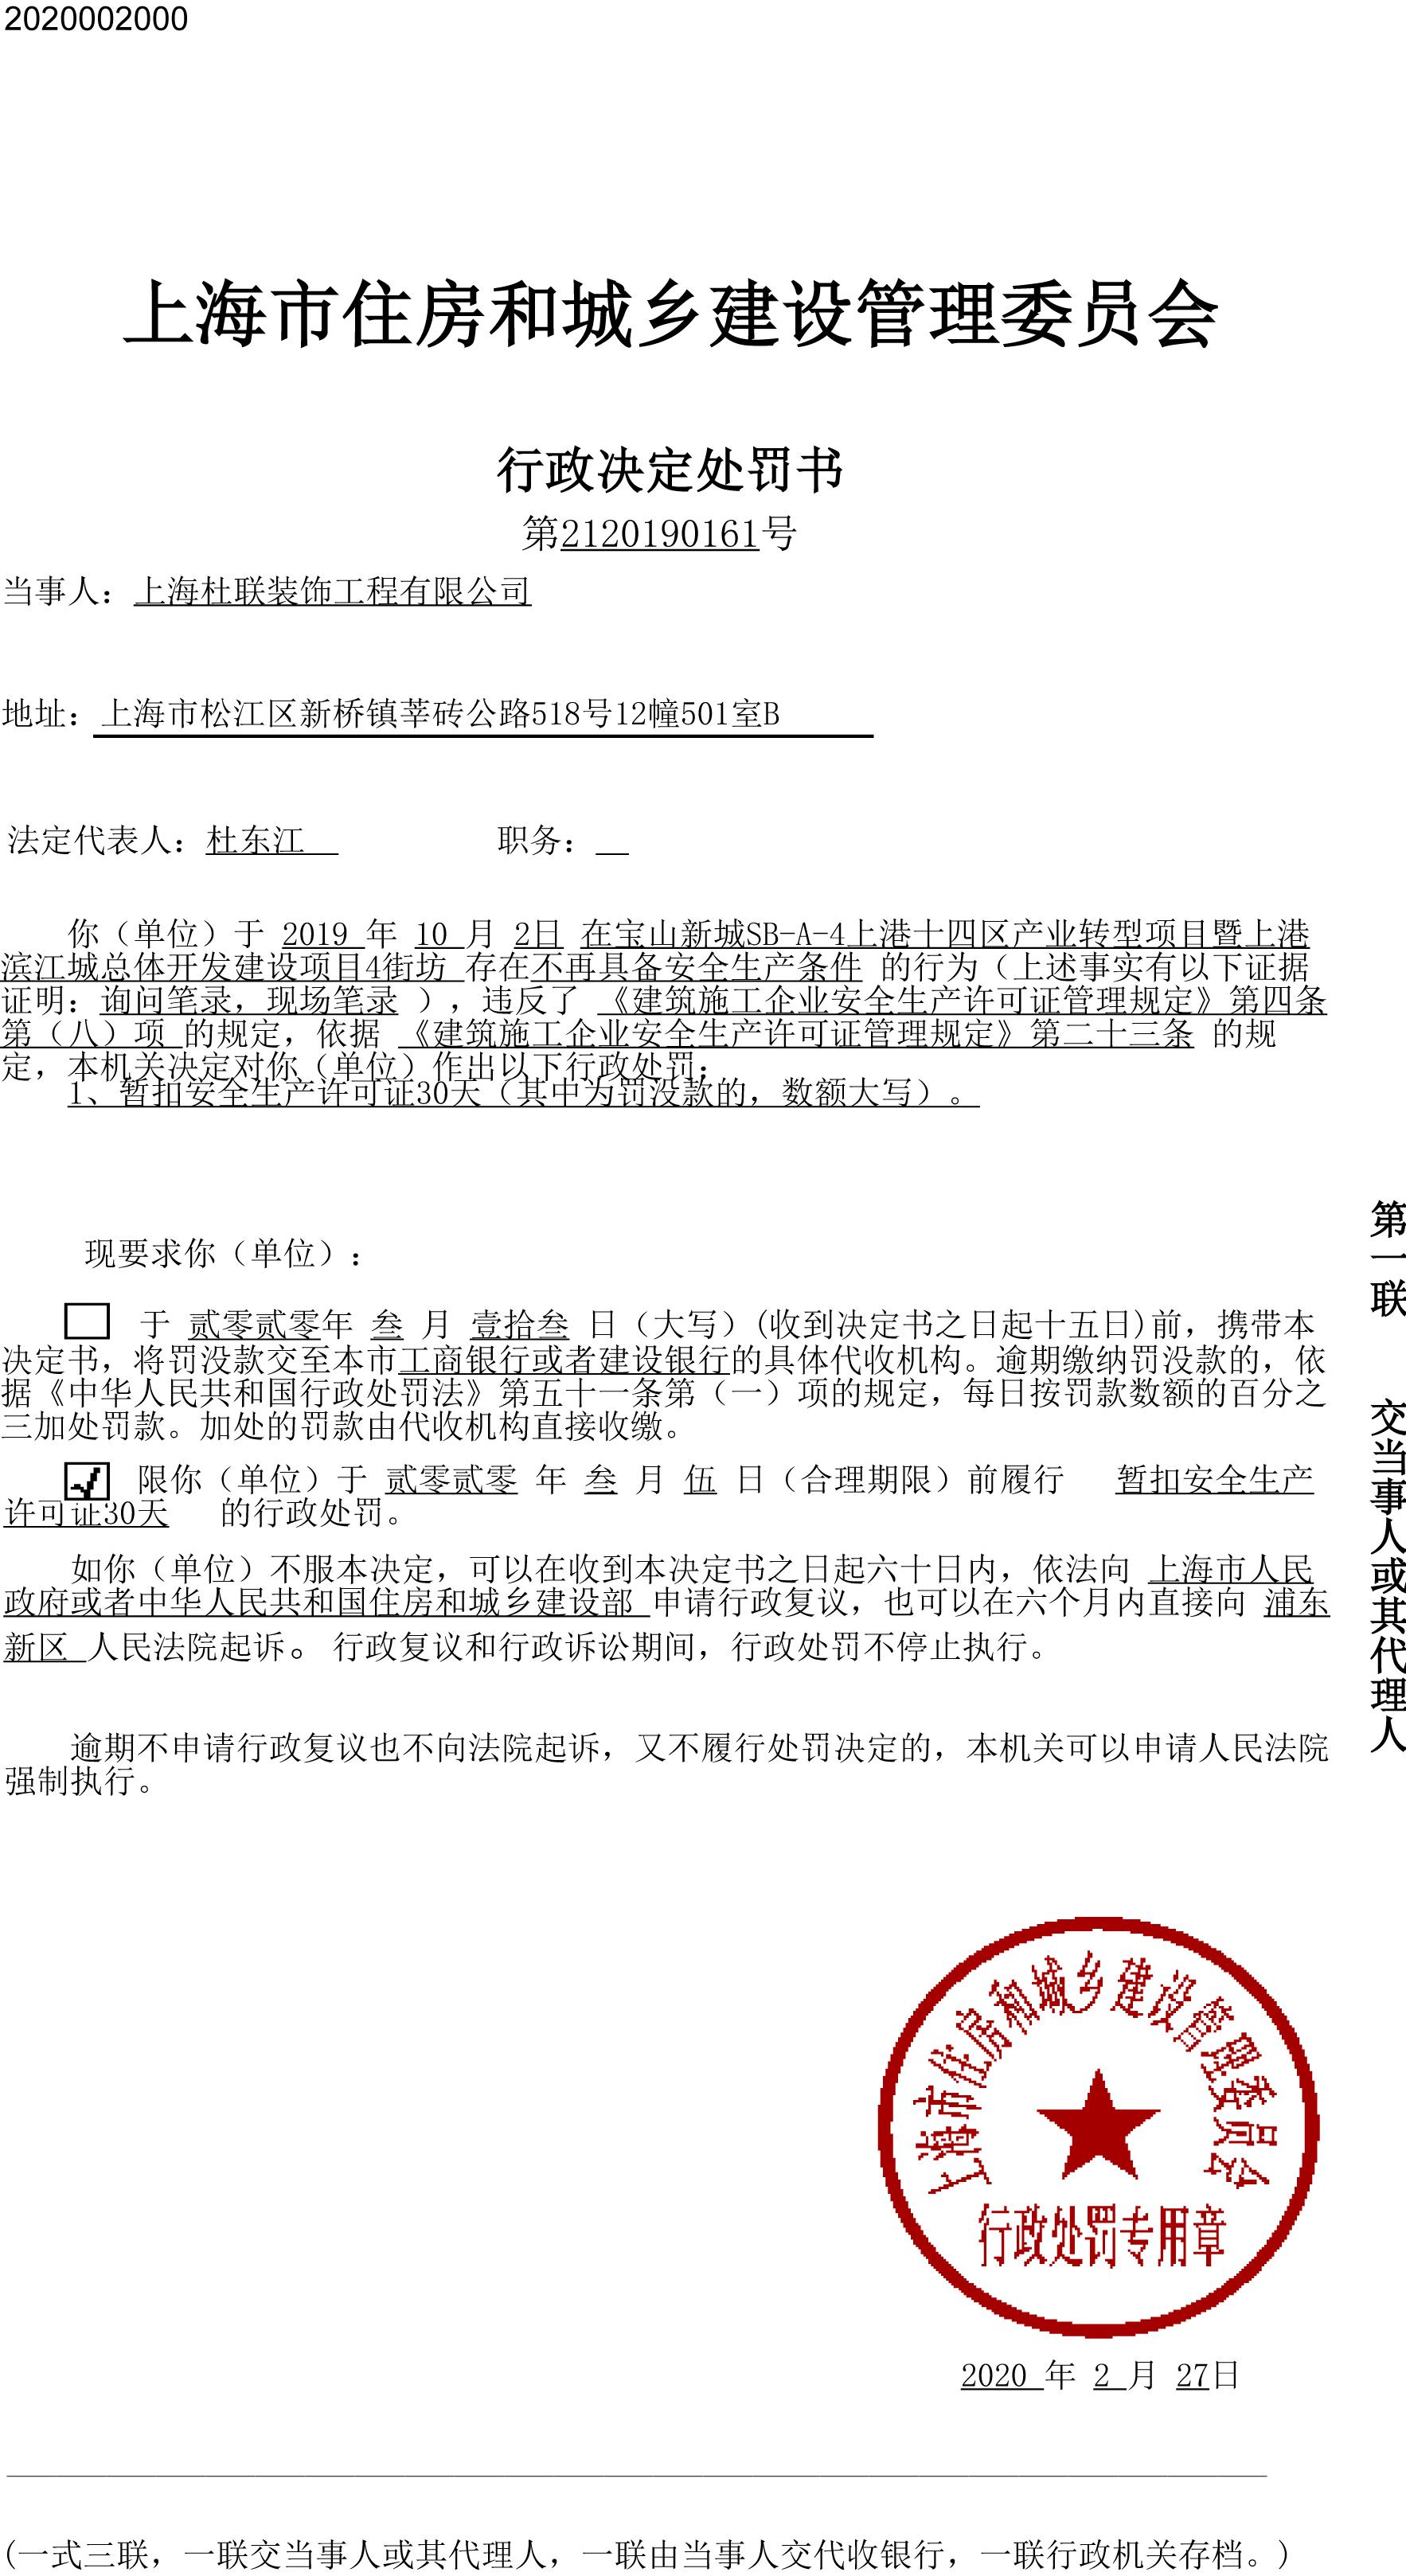 上海杜联装饰工程有限公司违反安全生产规定被暂扣安全生产许可证